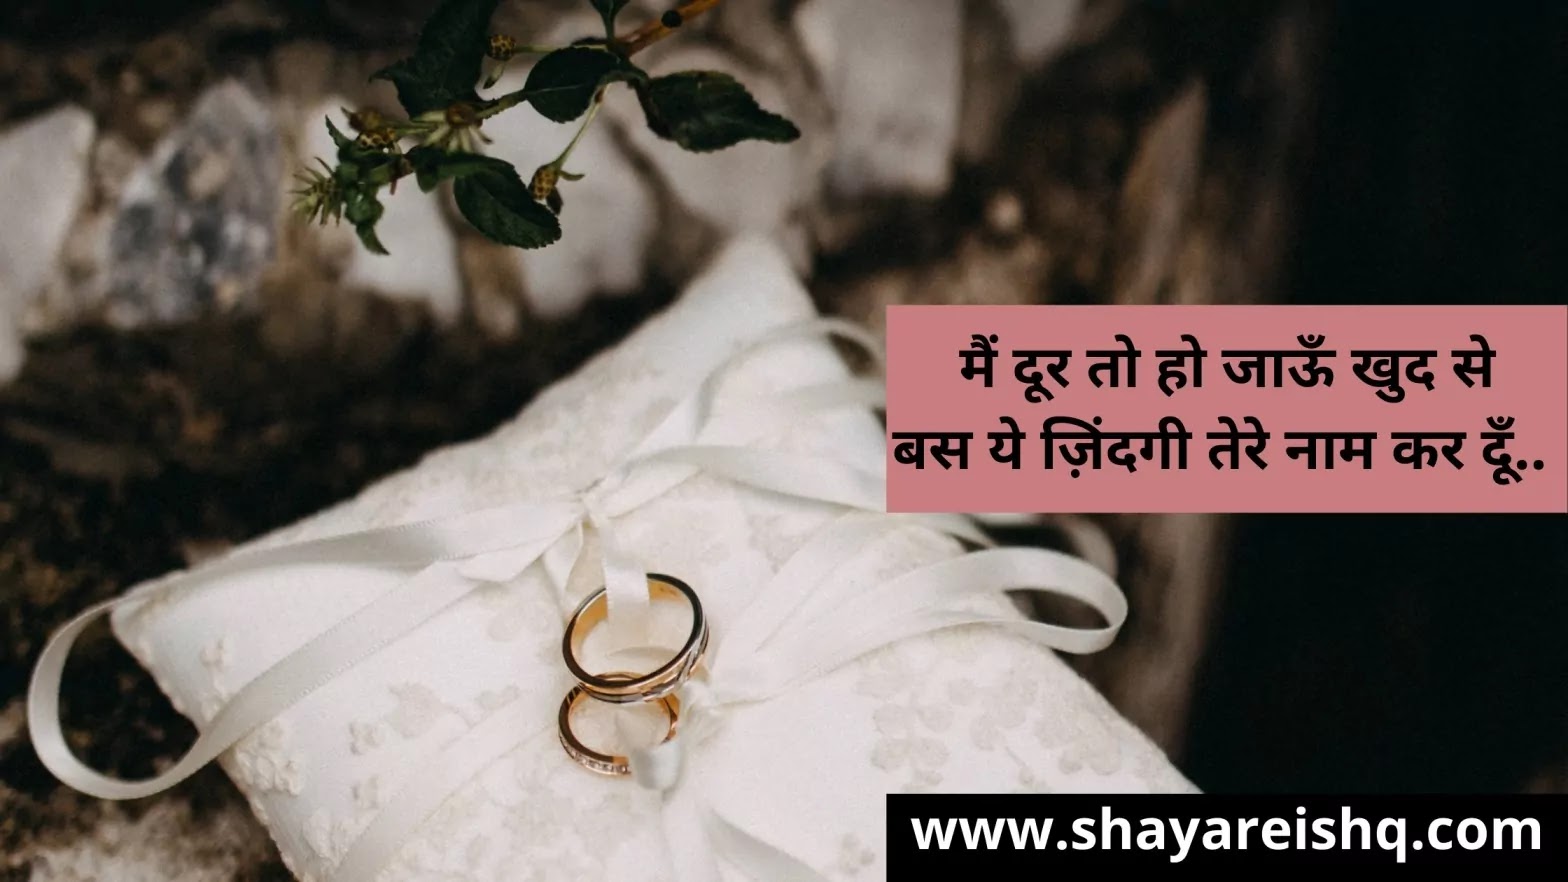 Happy Marriage Anniversary Wishes: शादी की सालगिरह पर भेजें ये शुभकामना  संदेश | Happy Marriage Anniversary Wishes, Messages, Quotes, SMS, Status in  Hindi - Hindi Boldsky